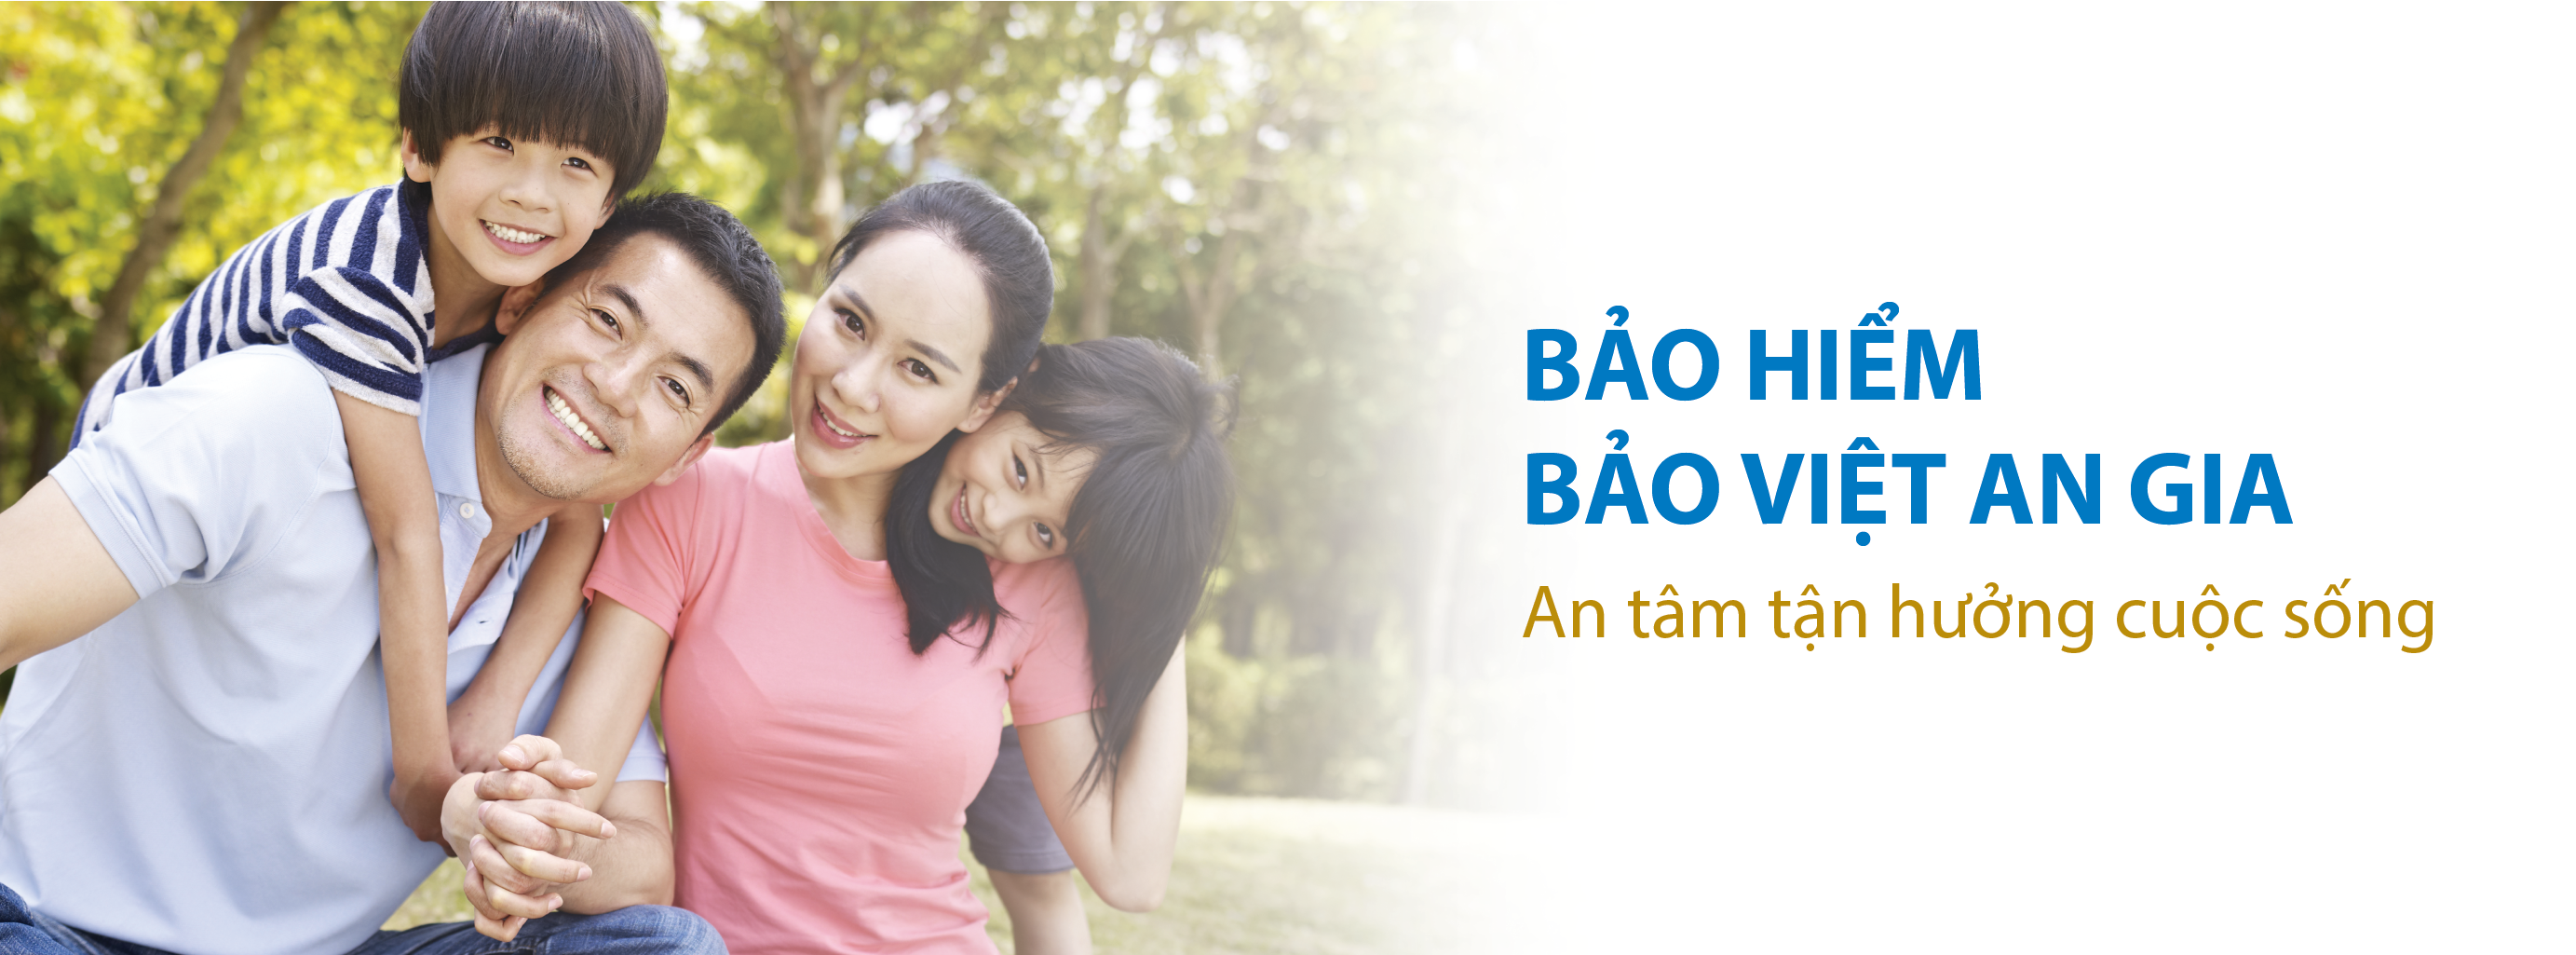 Bảo hiểm sức khỏe Bảo Việt